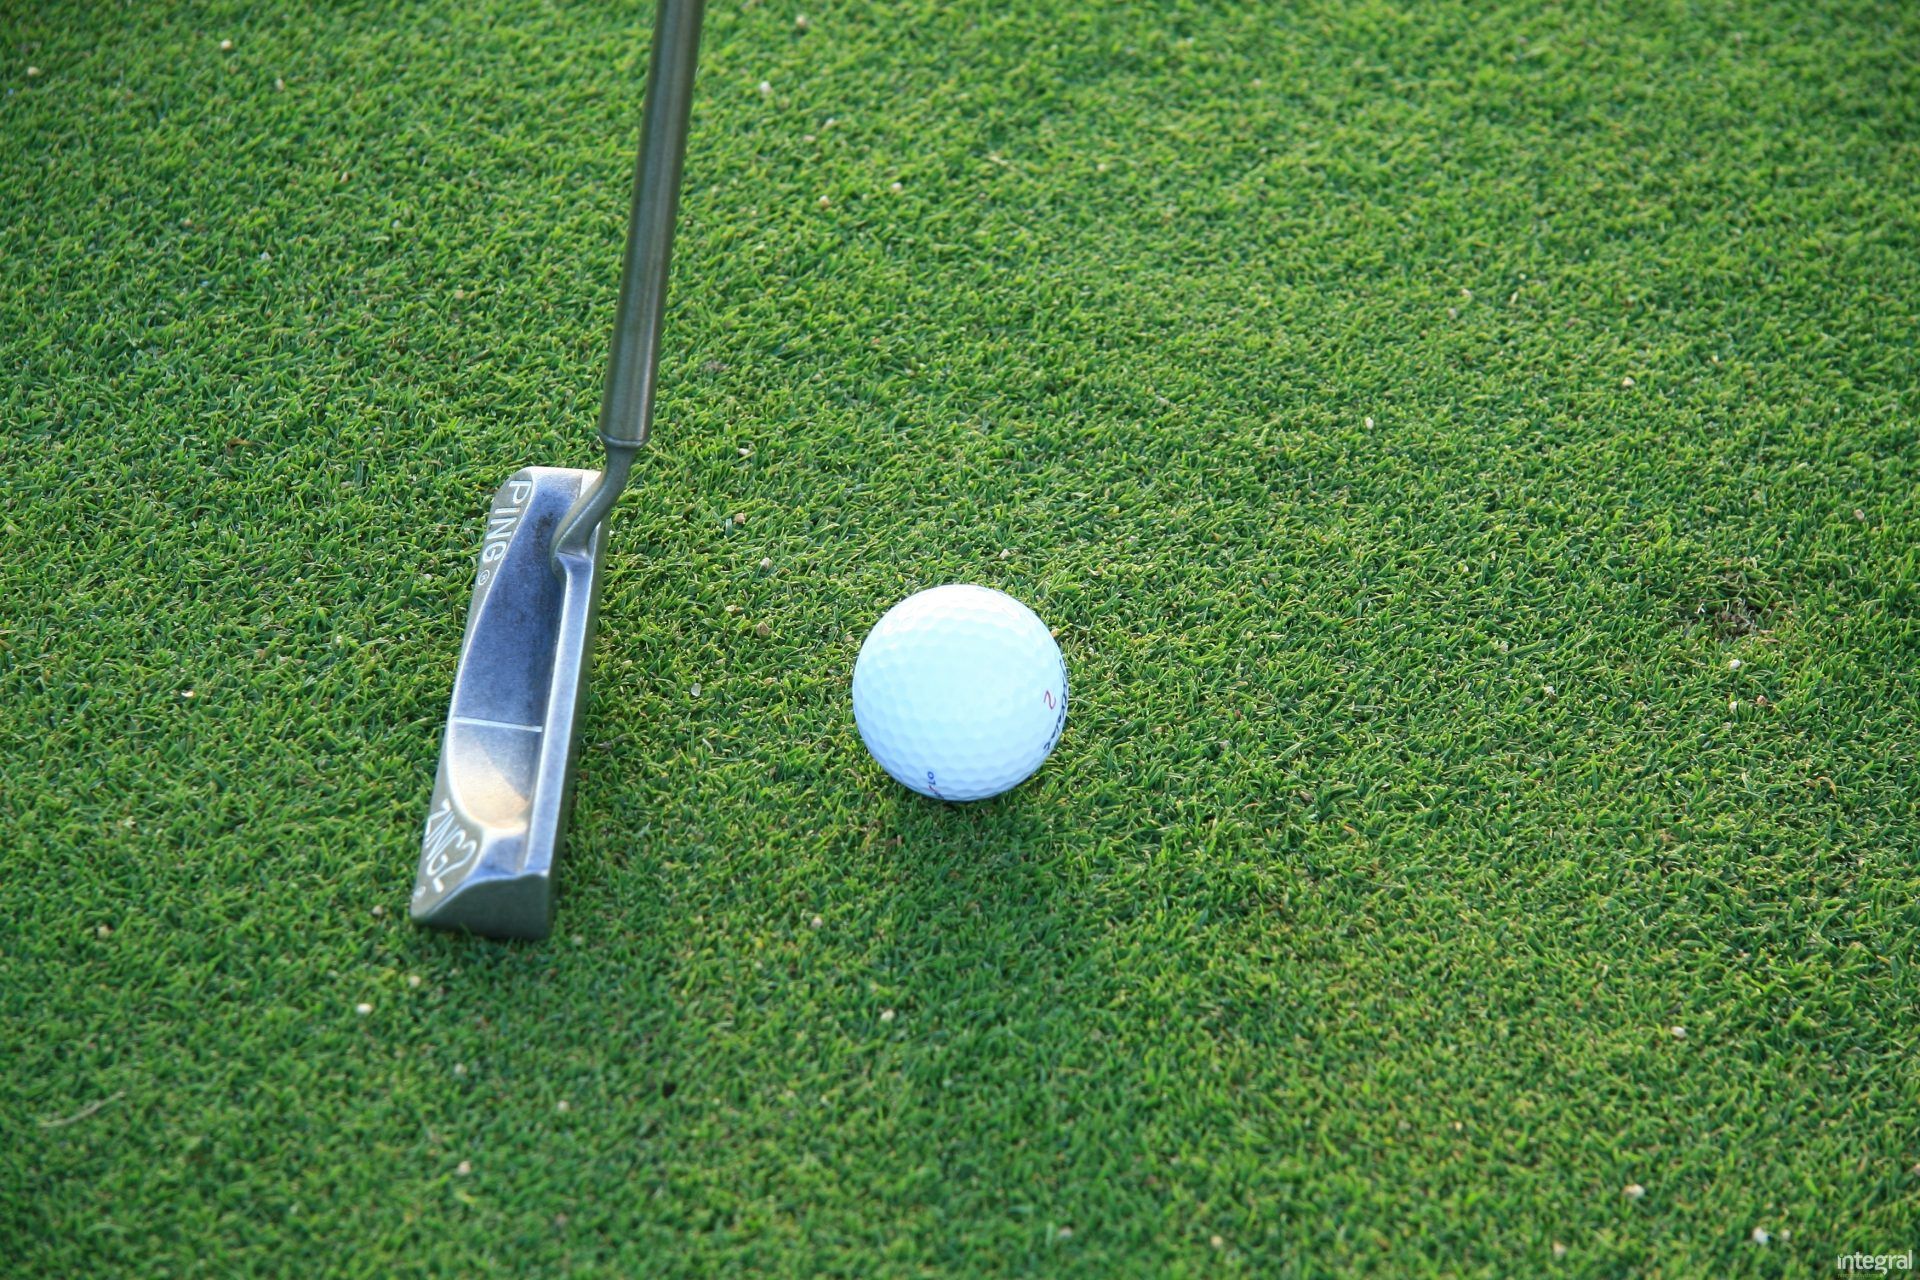 Golf-Green Artificial Grass Specialist, Manufacturer - Integral ® Grass